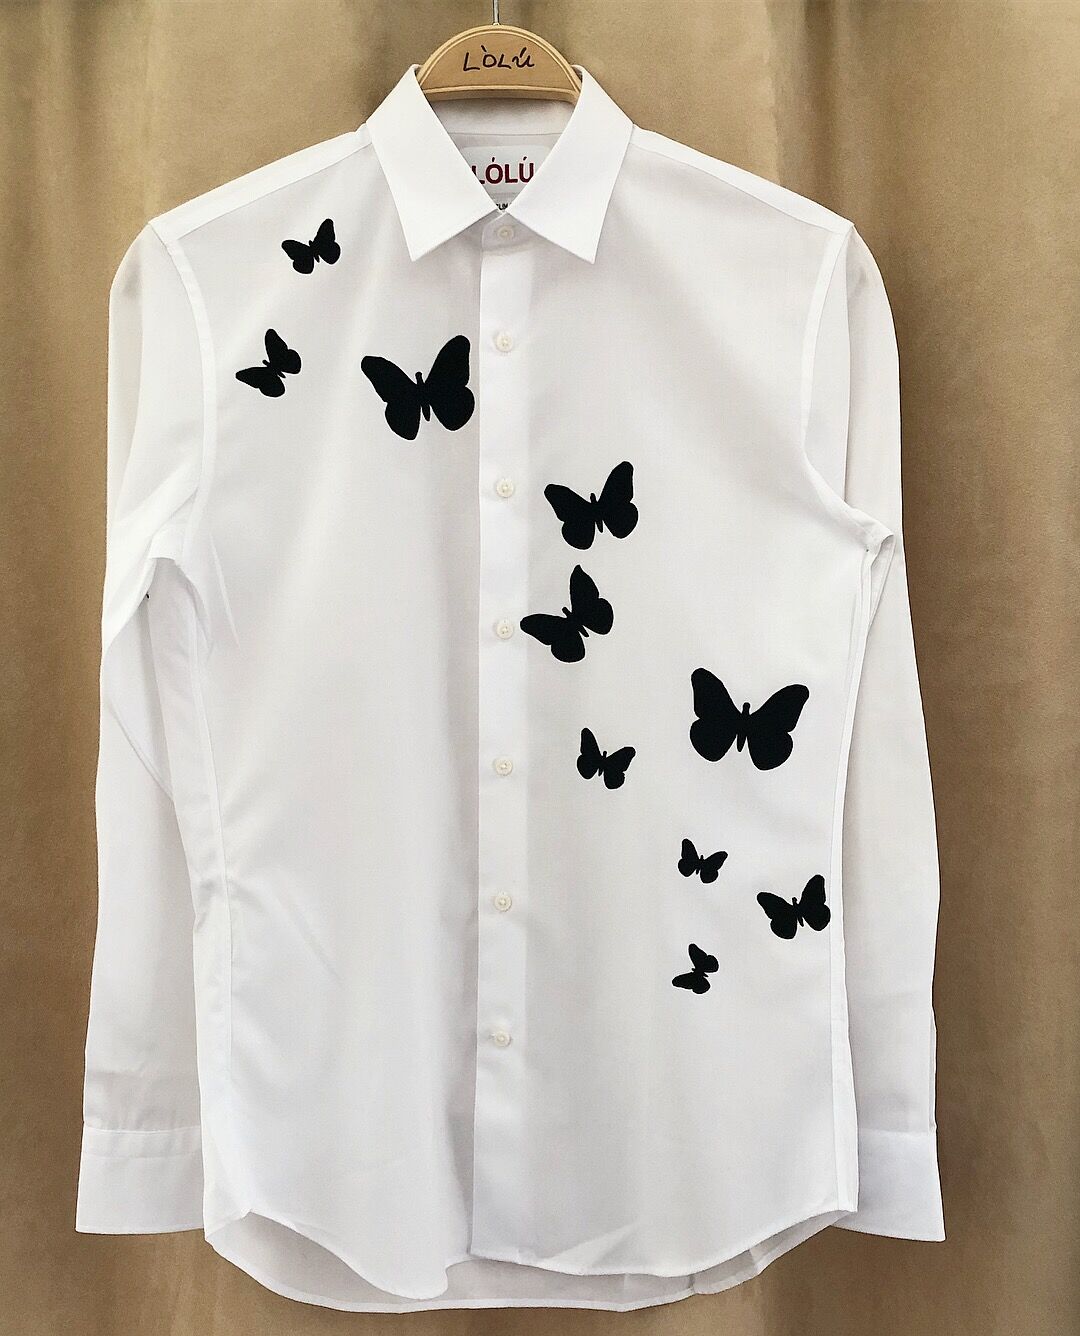 Collar with Velvet Monogram Shirt – Loluonline